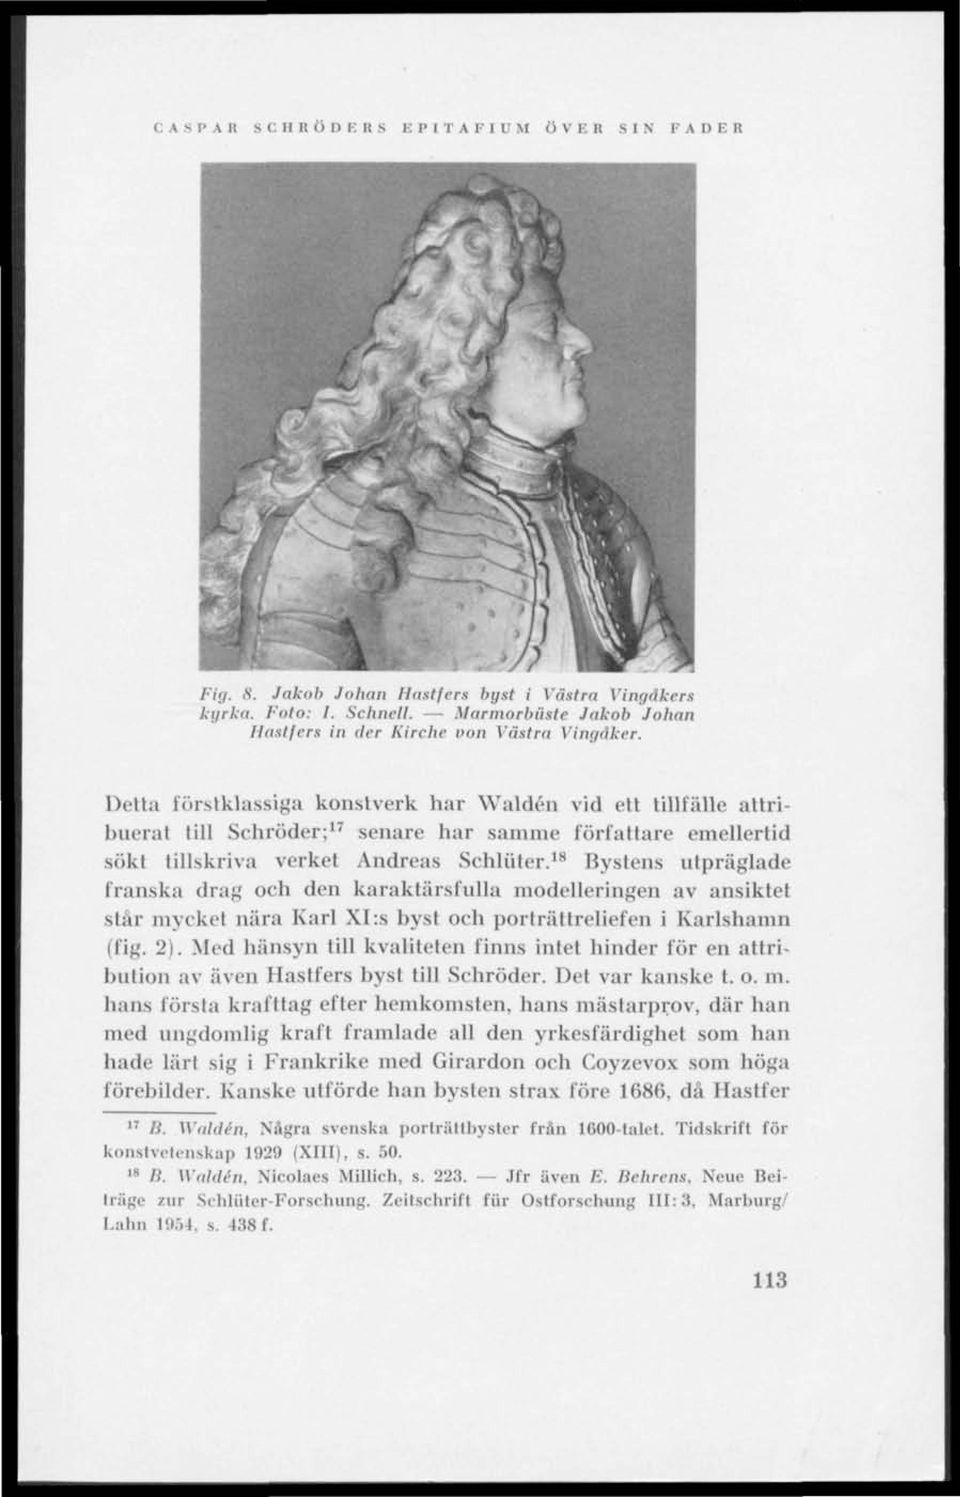 18 Bystens utpräglade franska drag och den karaktärsfulla modelleringen av ansiktet står mycket nära Karl XI:s byst och porträttreliefen i Karlshamn (fig. 2).